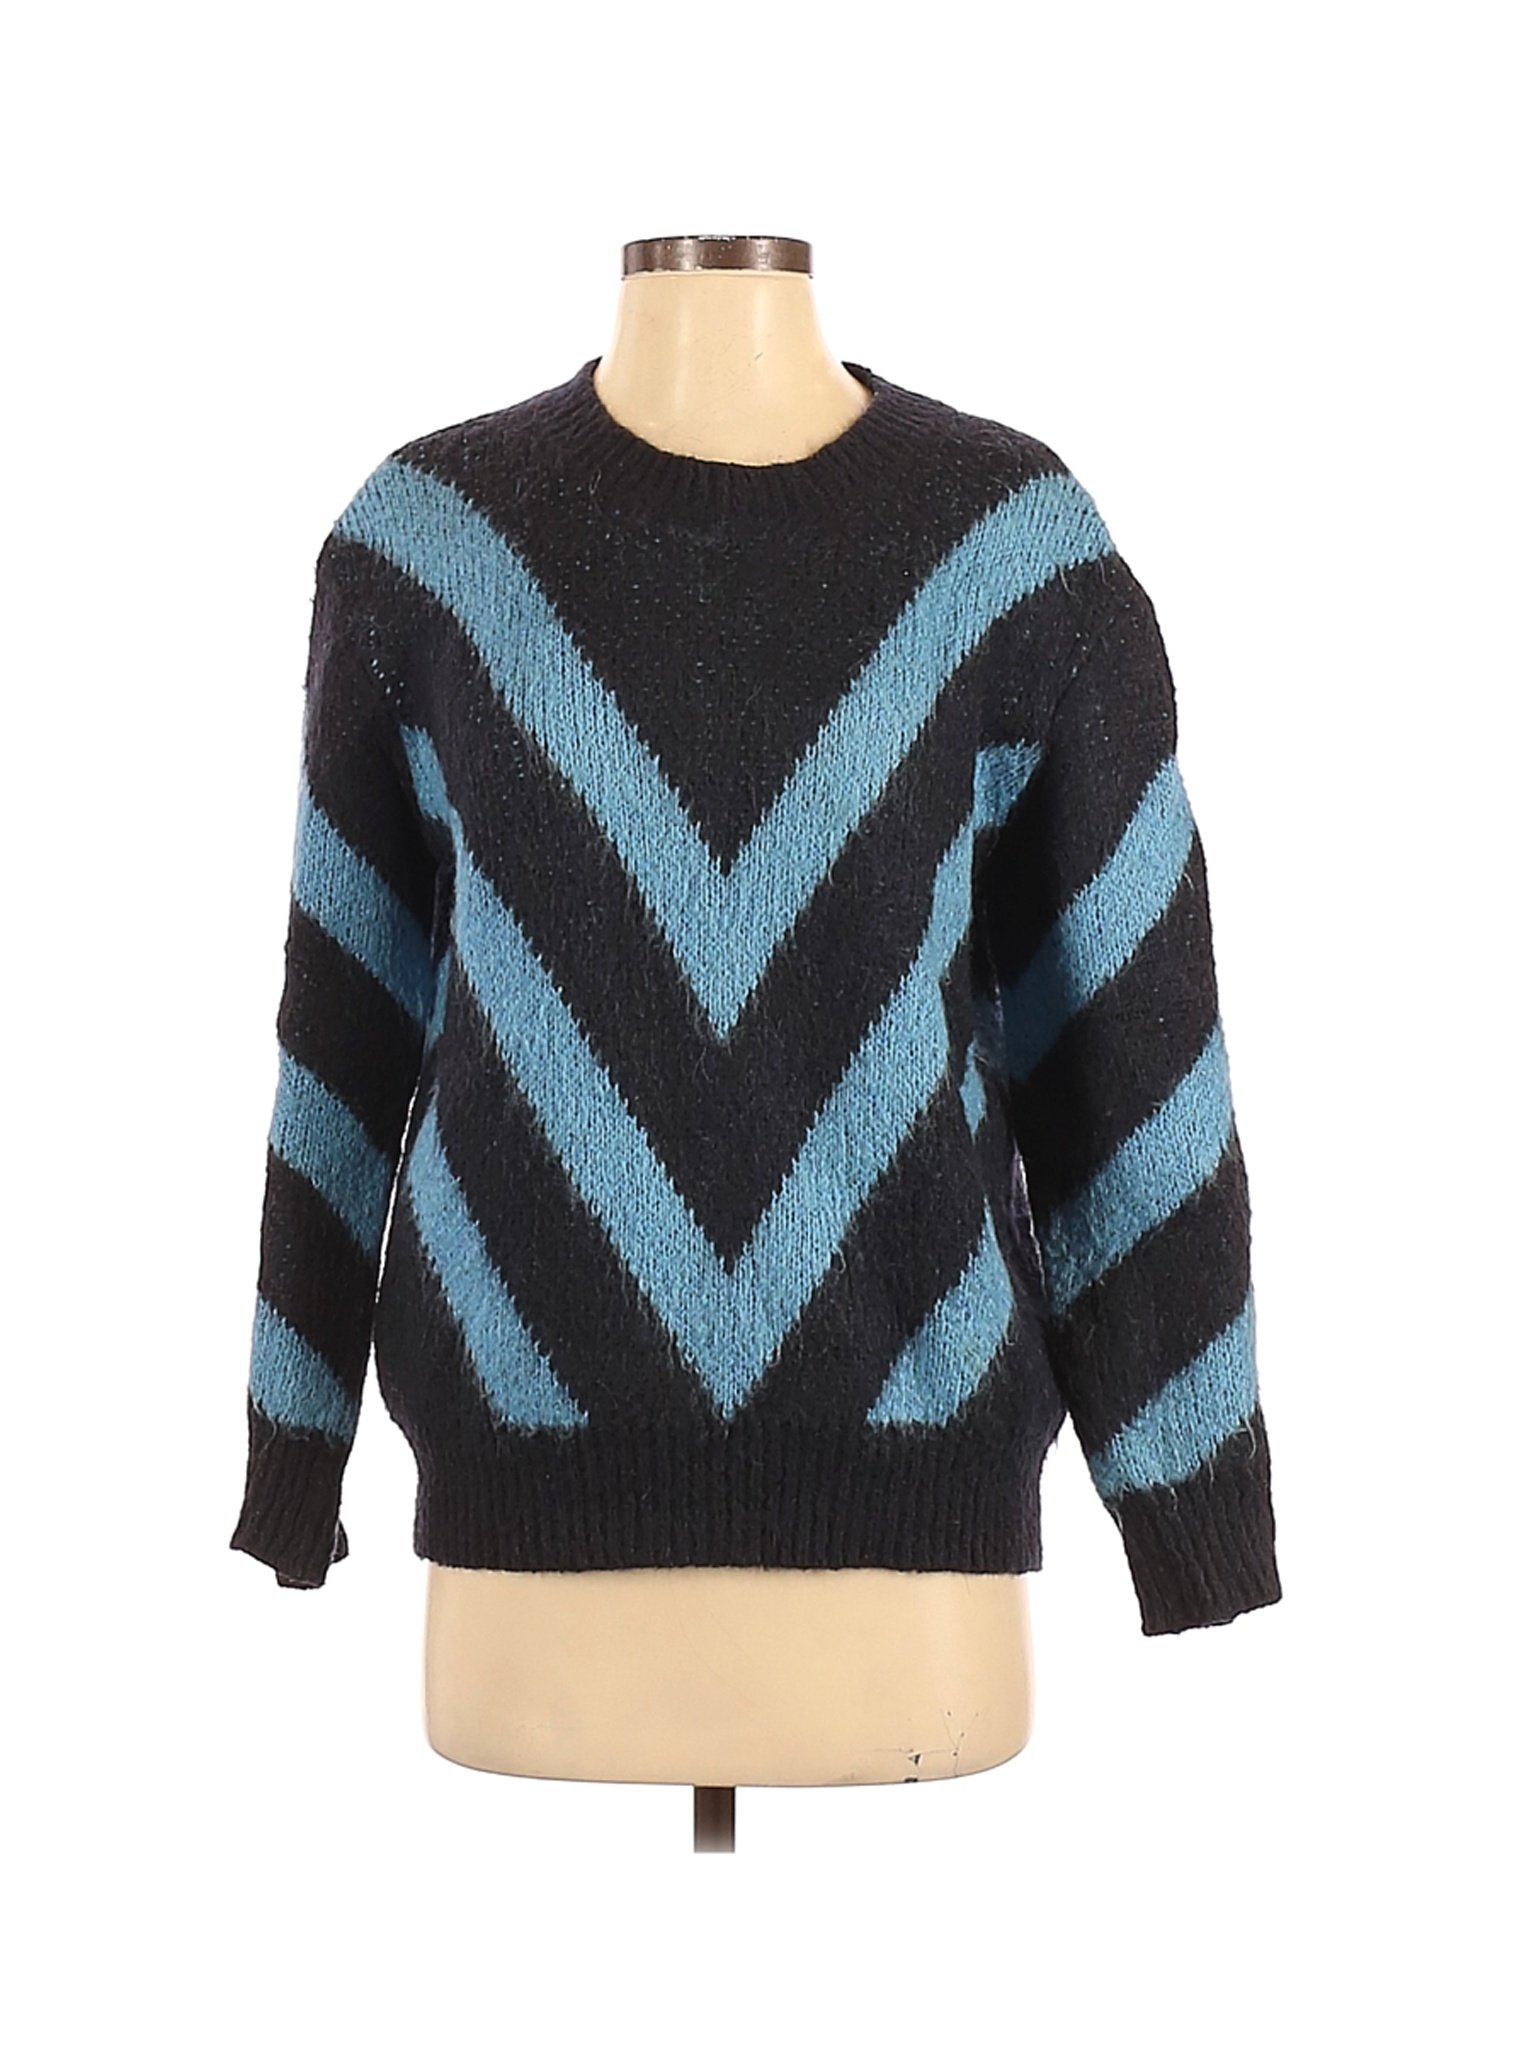 Sandro Women Black Pullover Sweater S | eBay